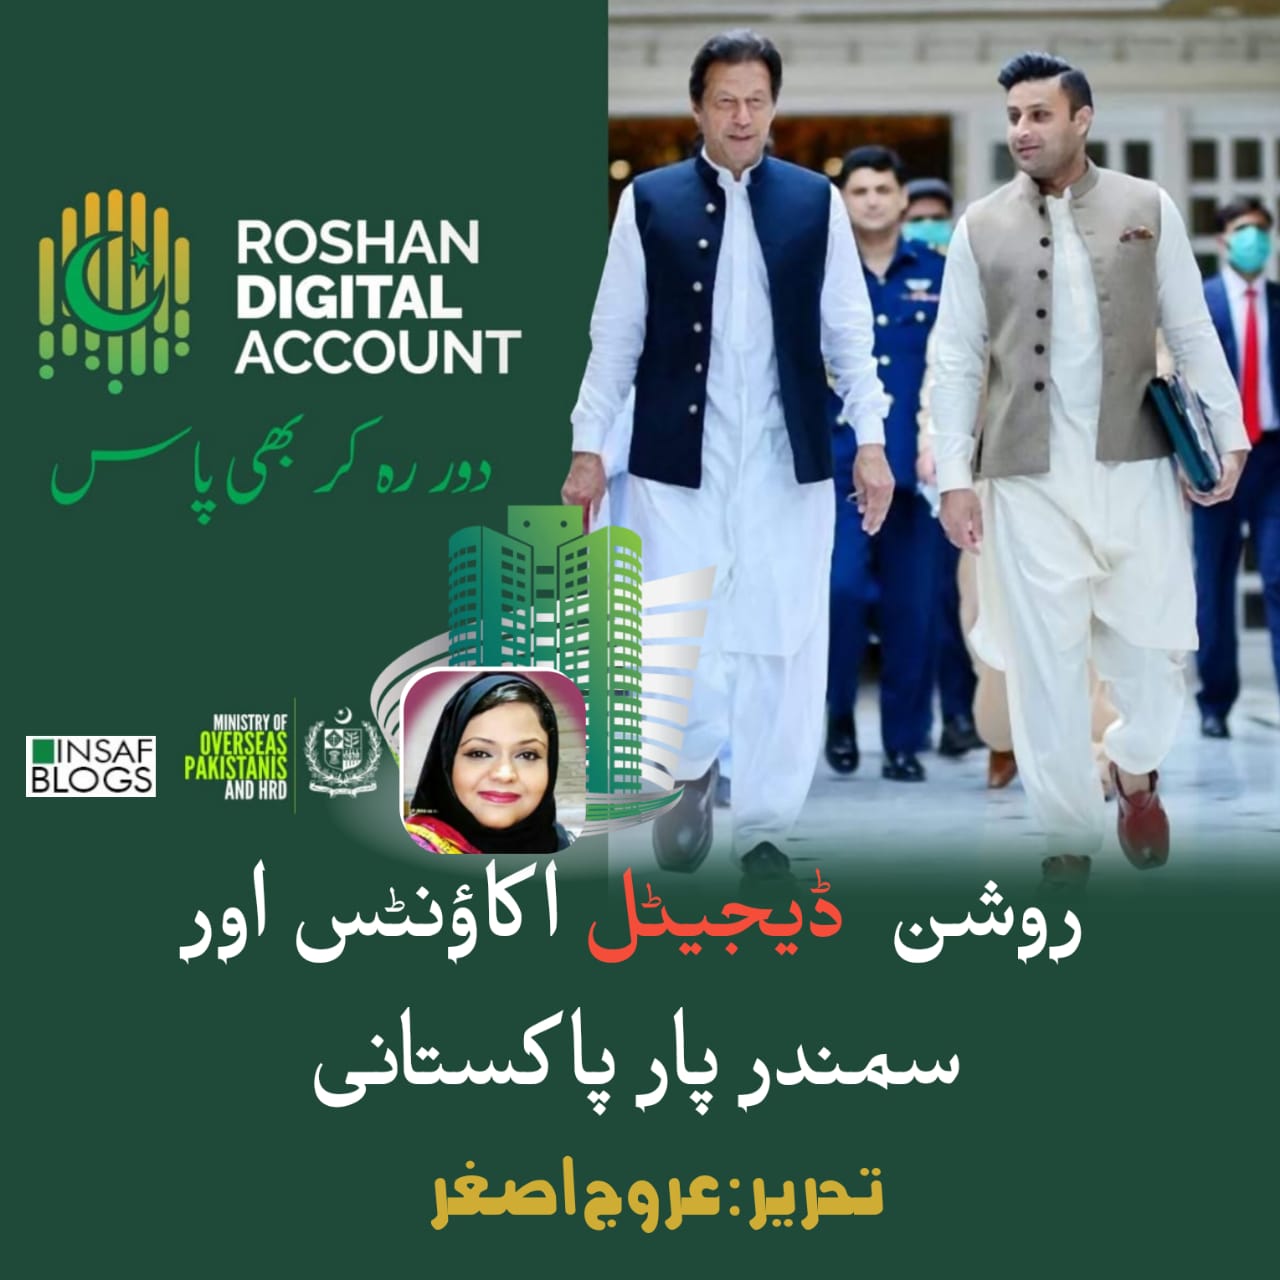 Roshan  Digital Account Insaf Blog